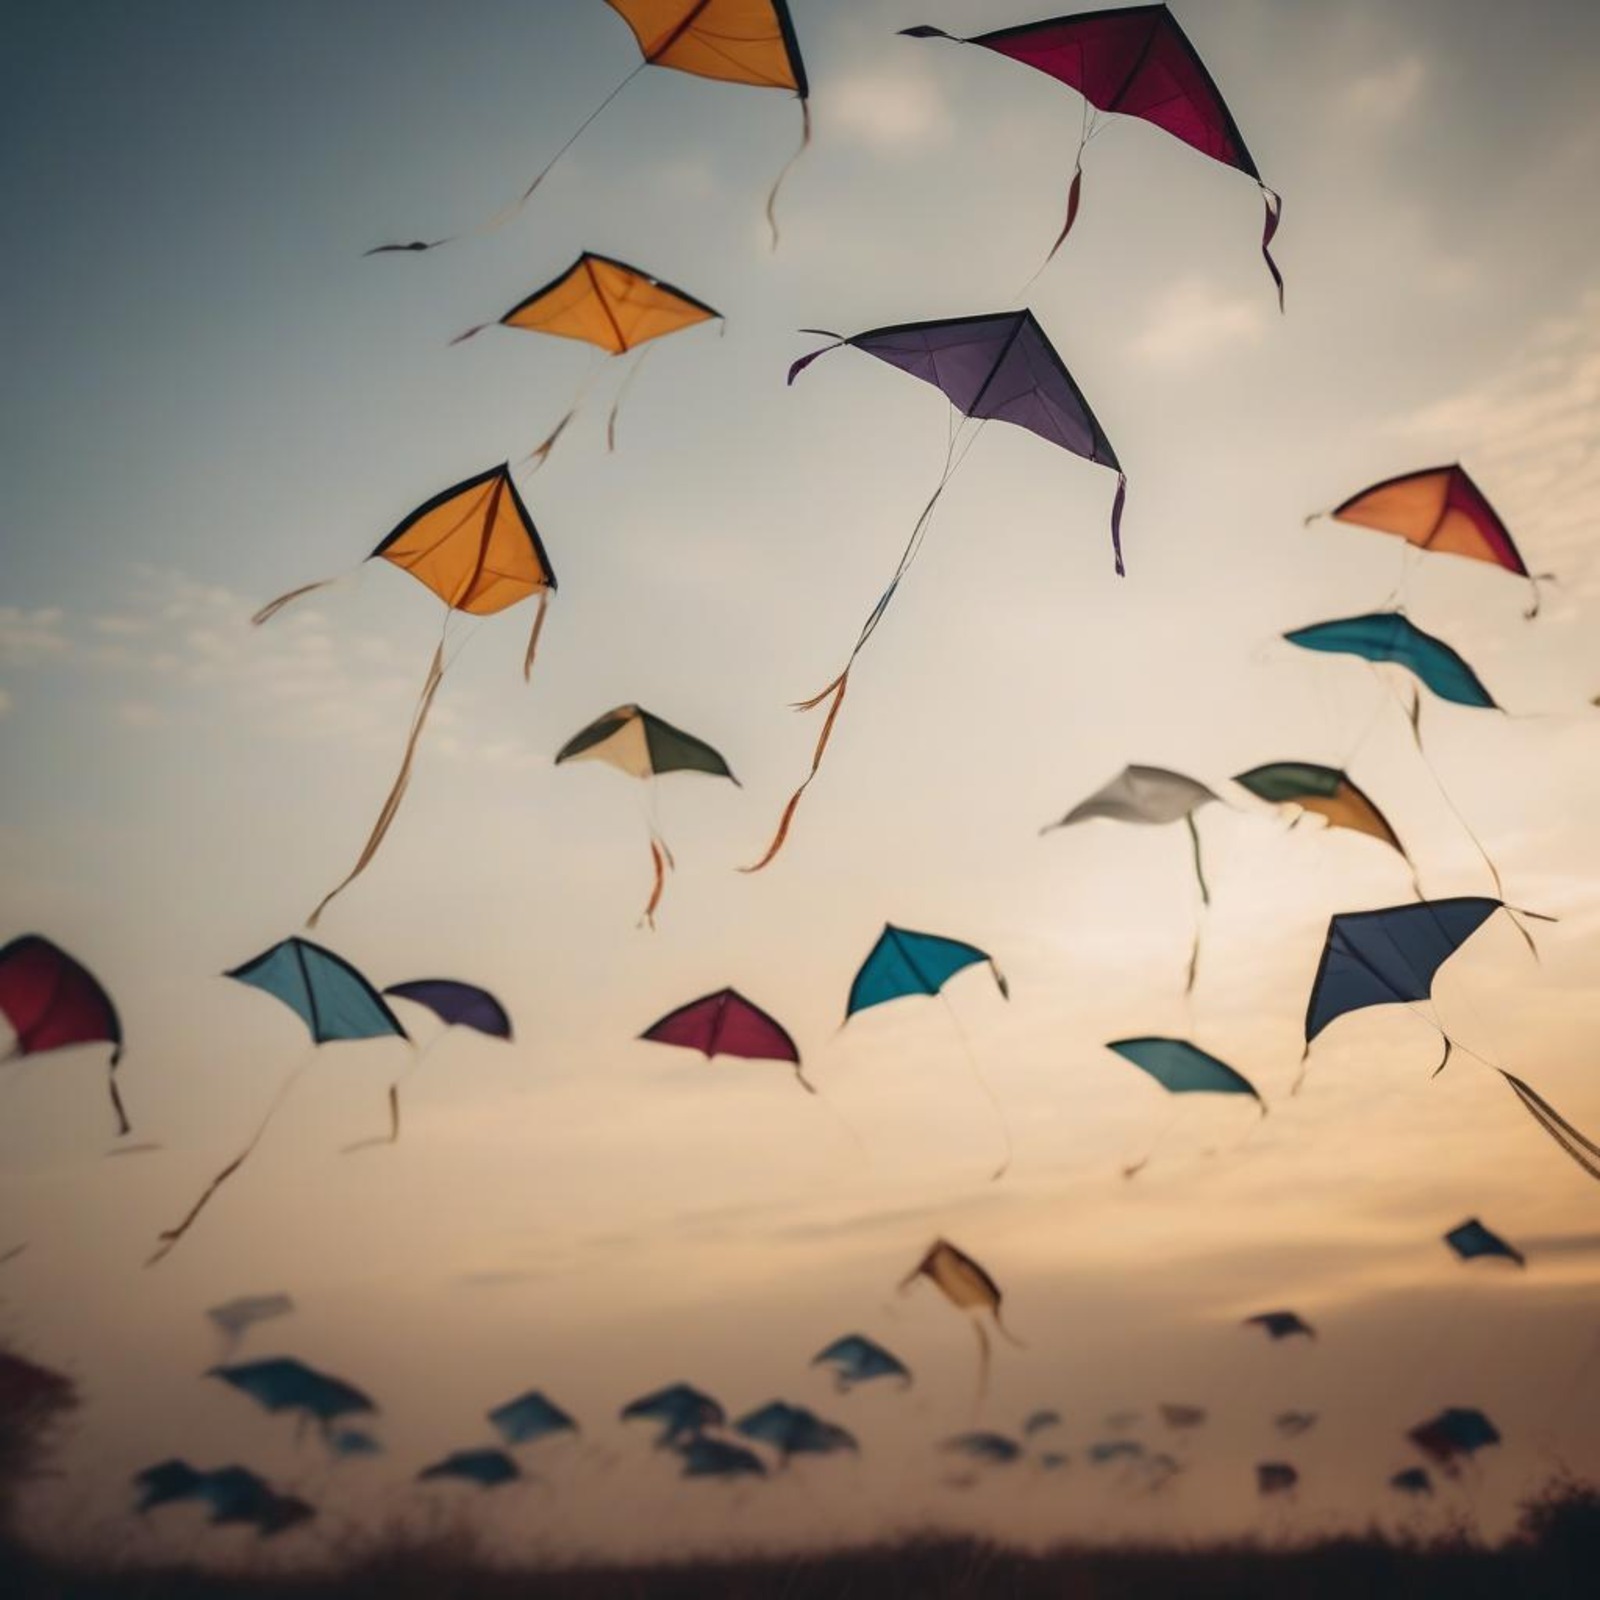 Sober event in NJ: kite festival